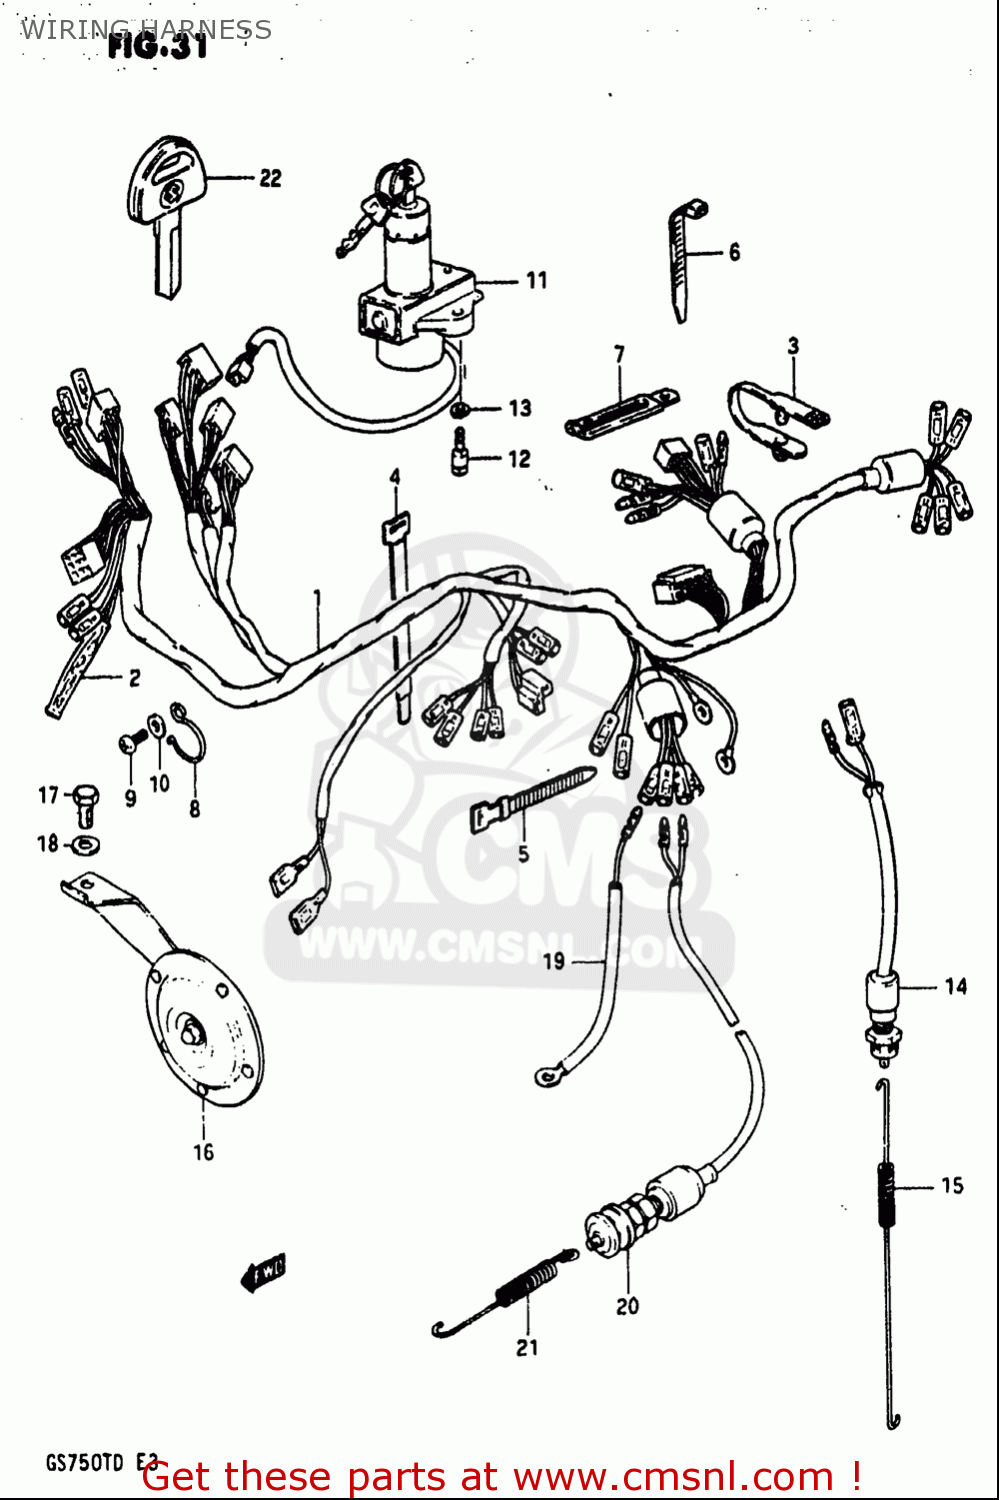 [DIAGRAM] 1981 Suzuki Gs750 Wiring Diagram - MYDIAGRAM.ONLINE